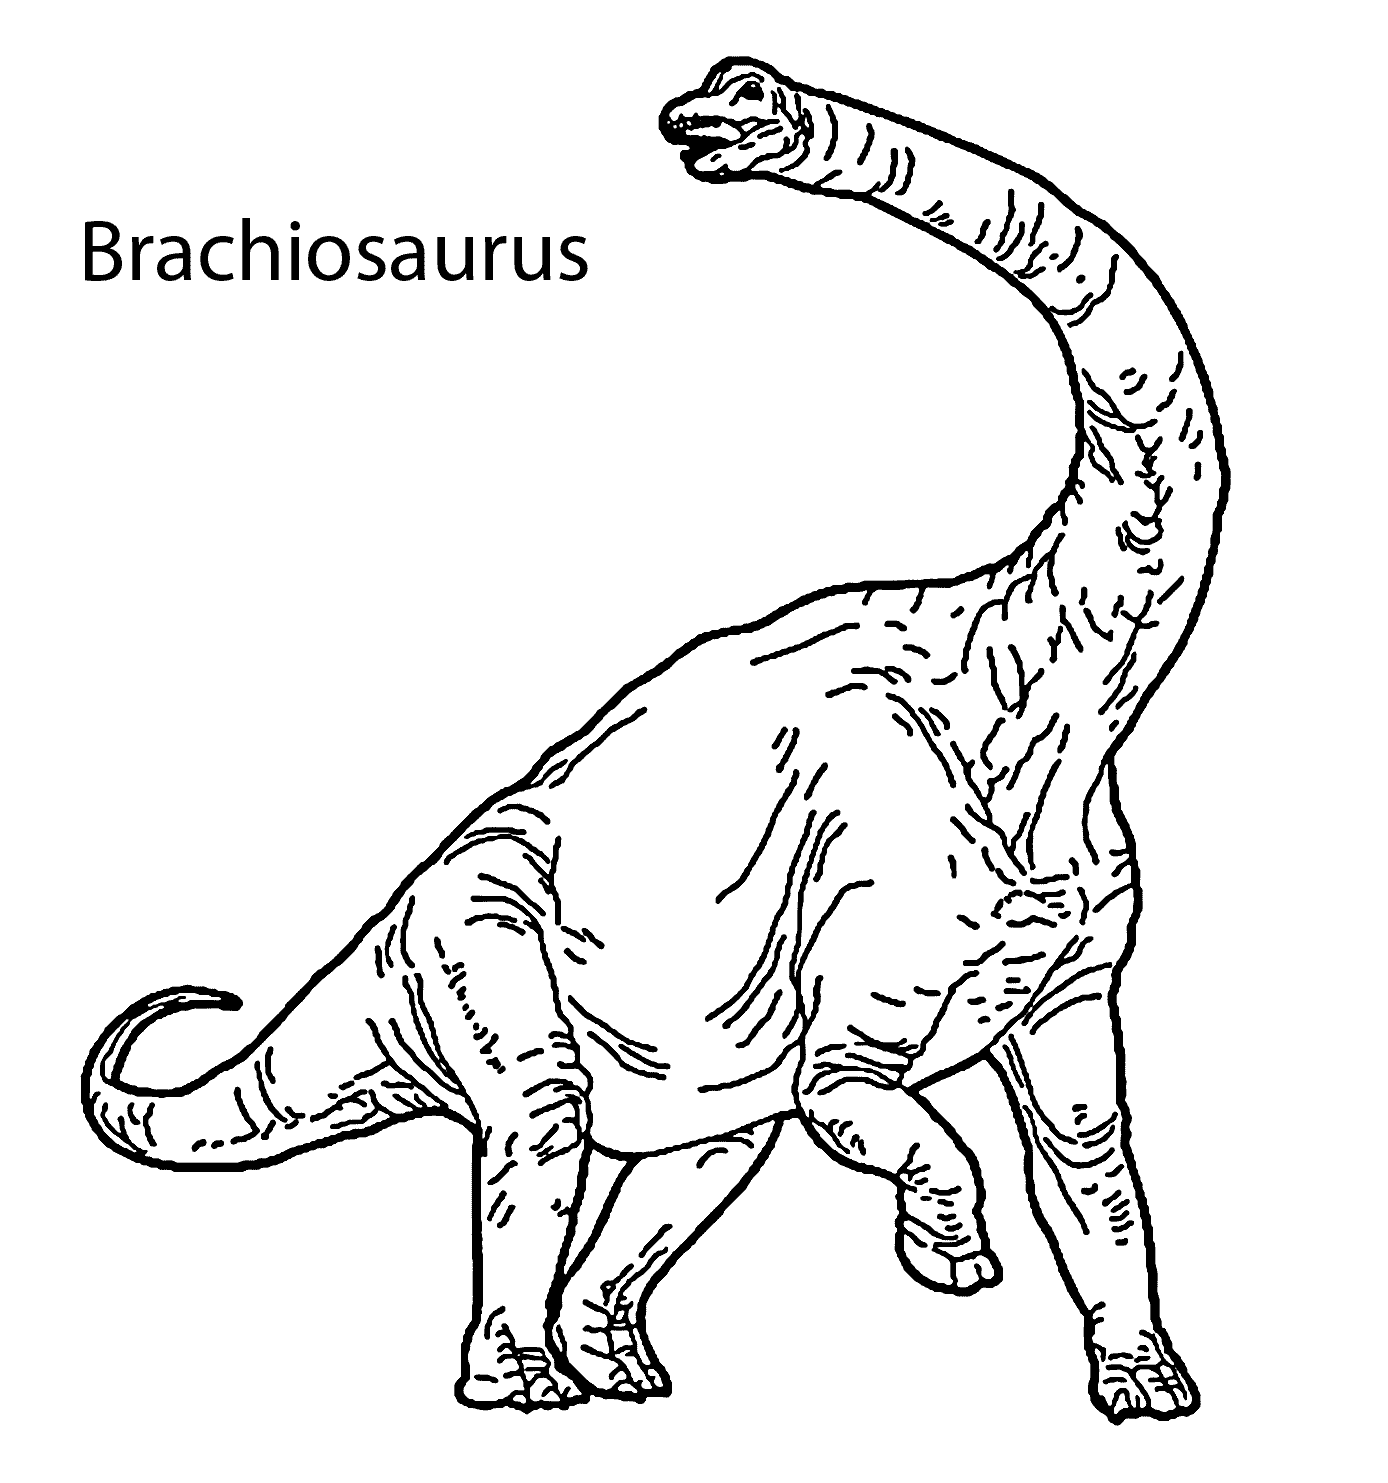 brachiosaurus dinosaur coloring pages